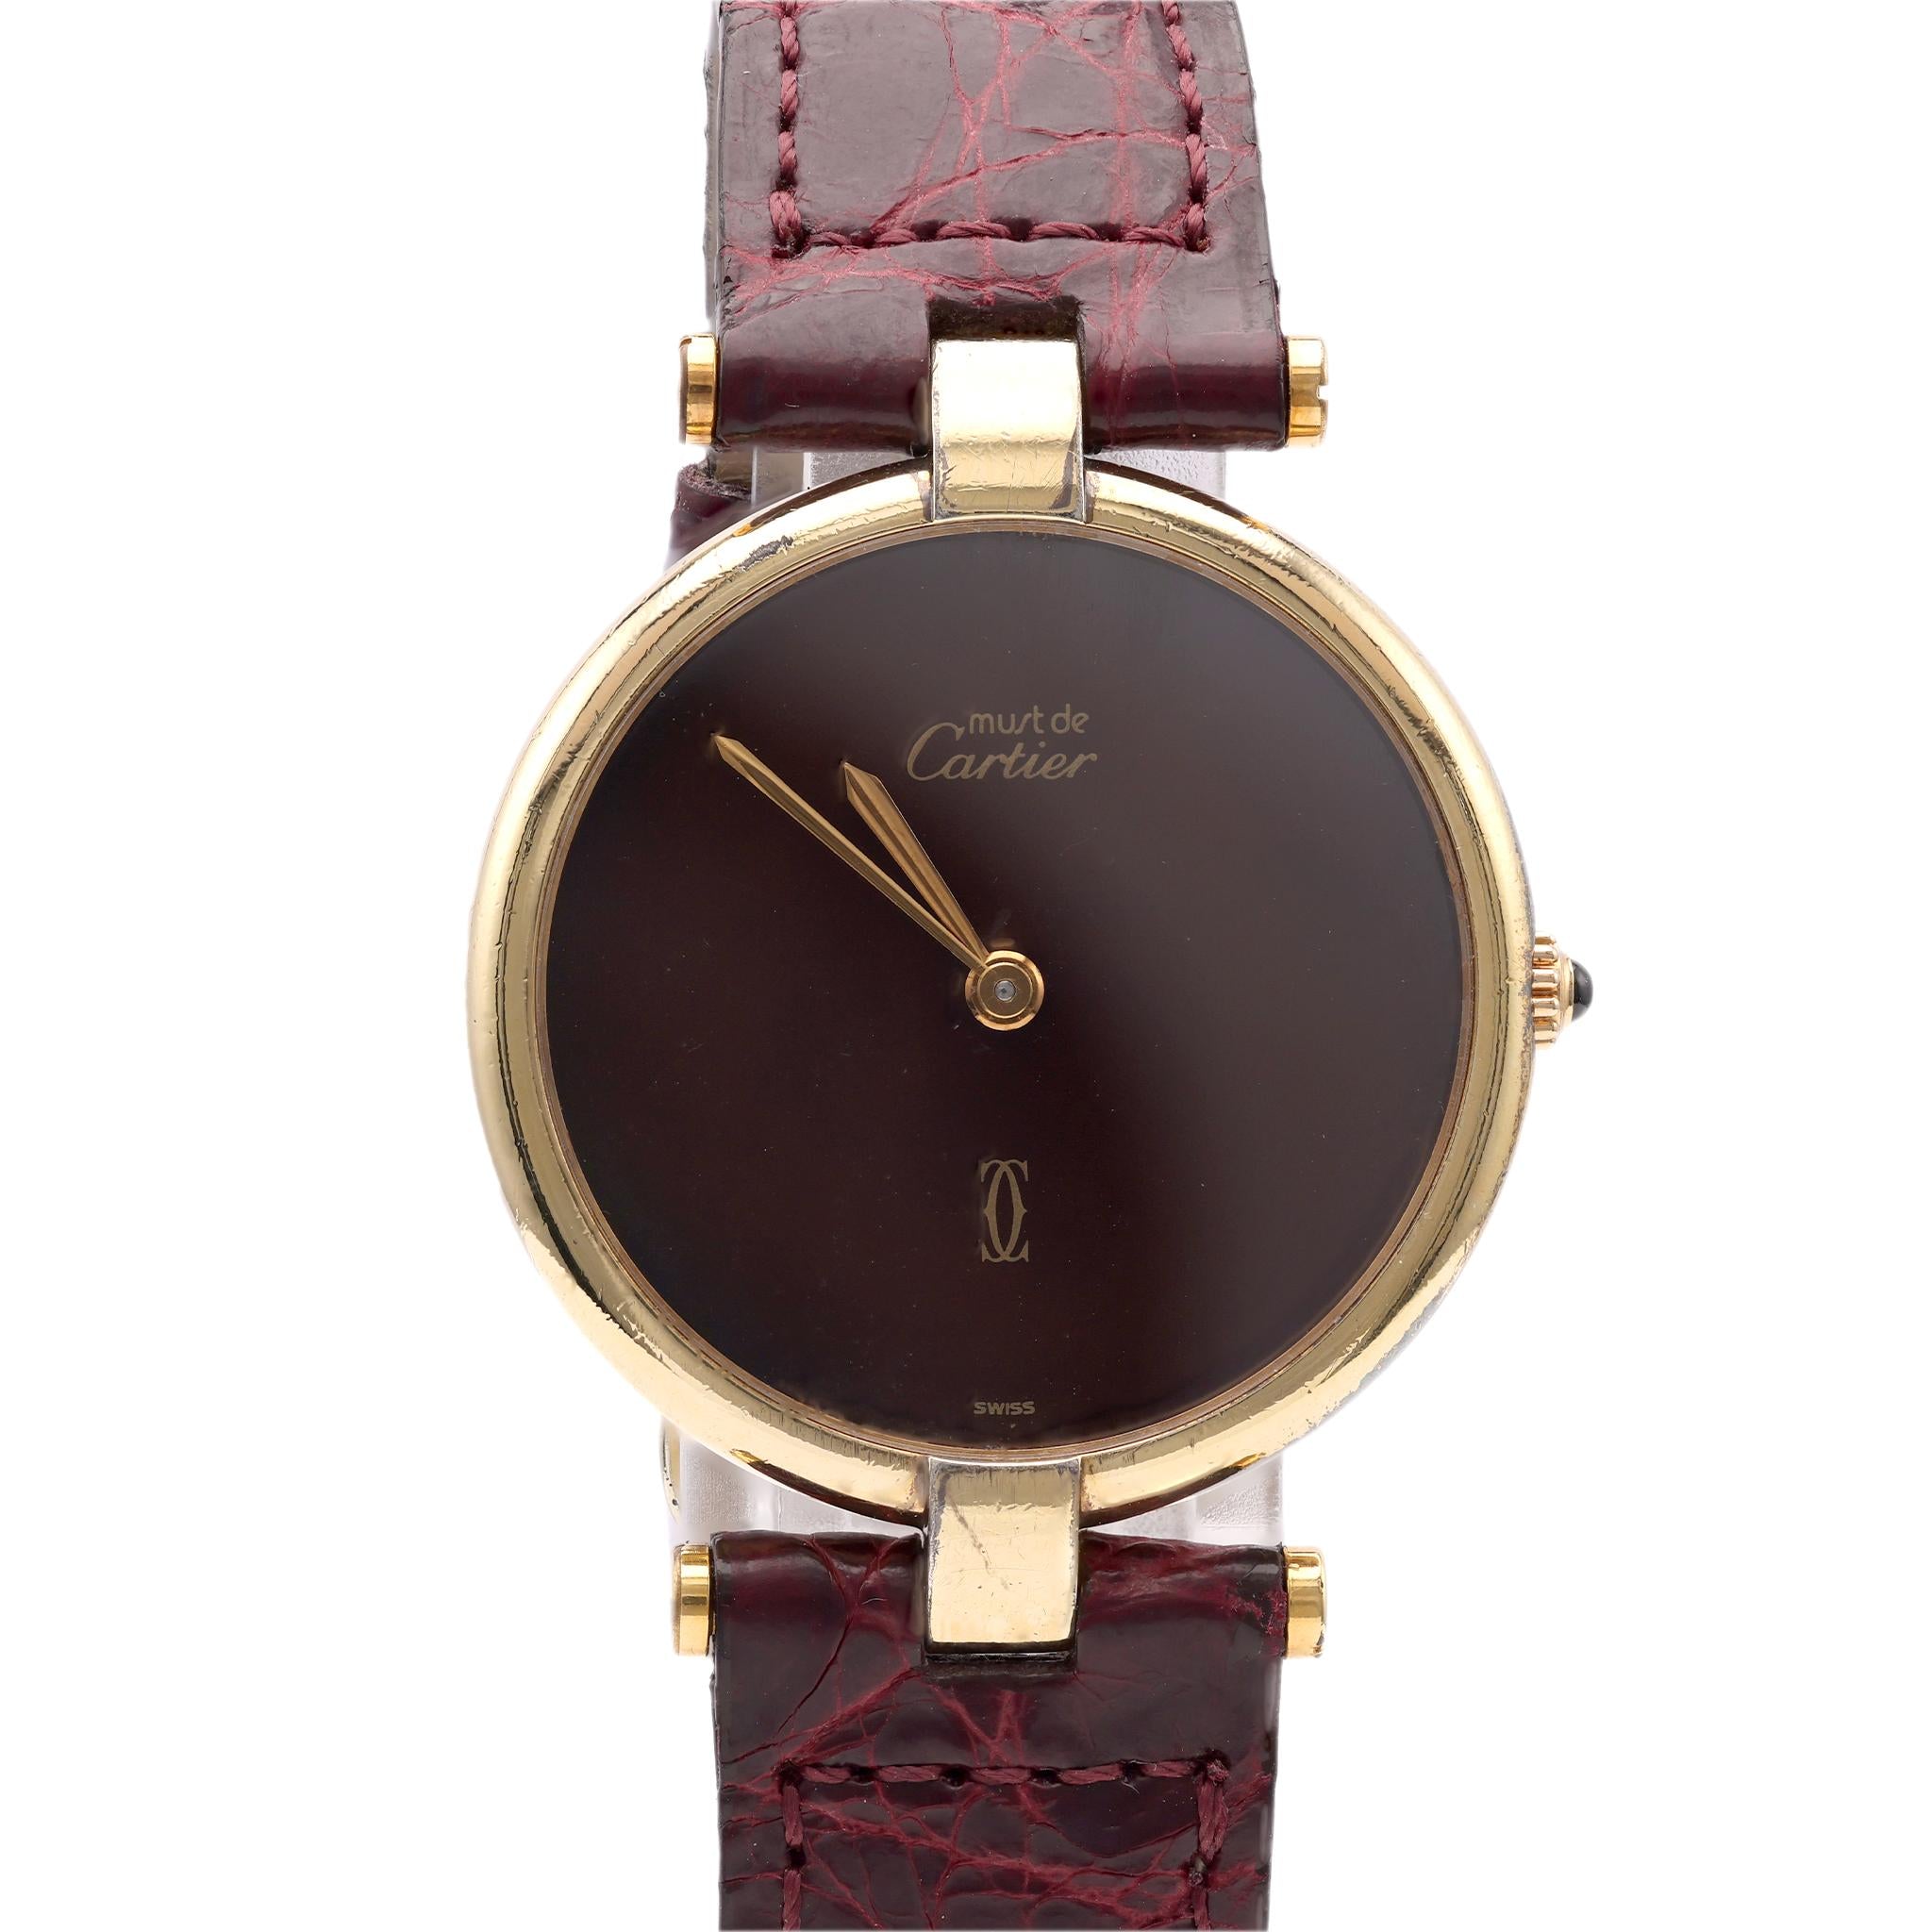 Vintage Cartier Must de Vendome Leather Watch